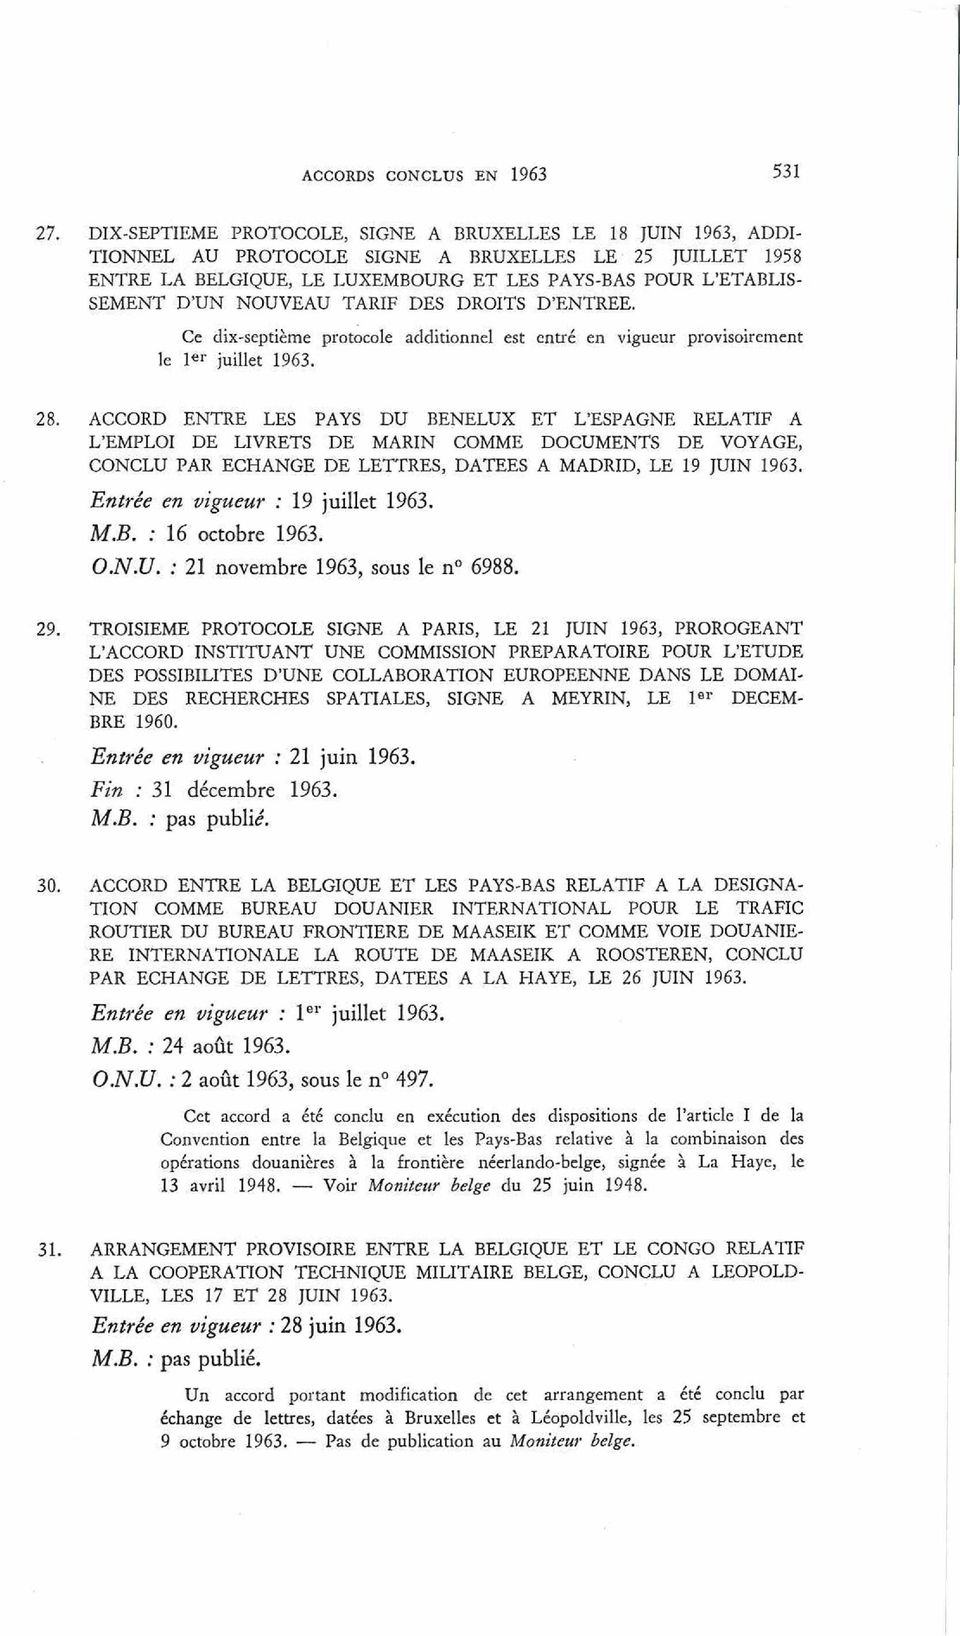 NOUVEAU TARIF DES DROITS D ENTREE. Ce dix-septième protocole additionnel est entré en vigueur provisoirement le 1er juillet 1963. 28.